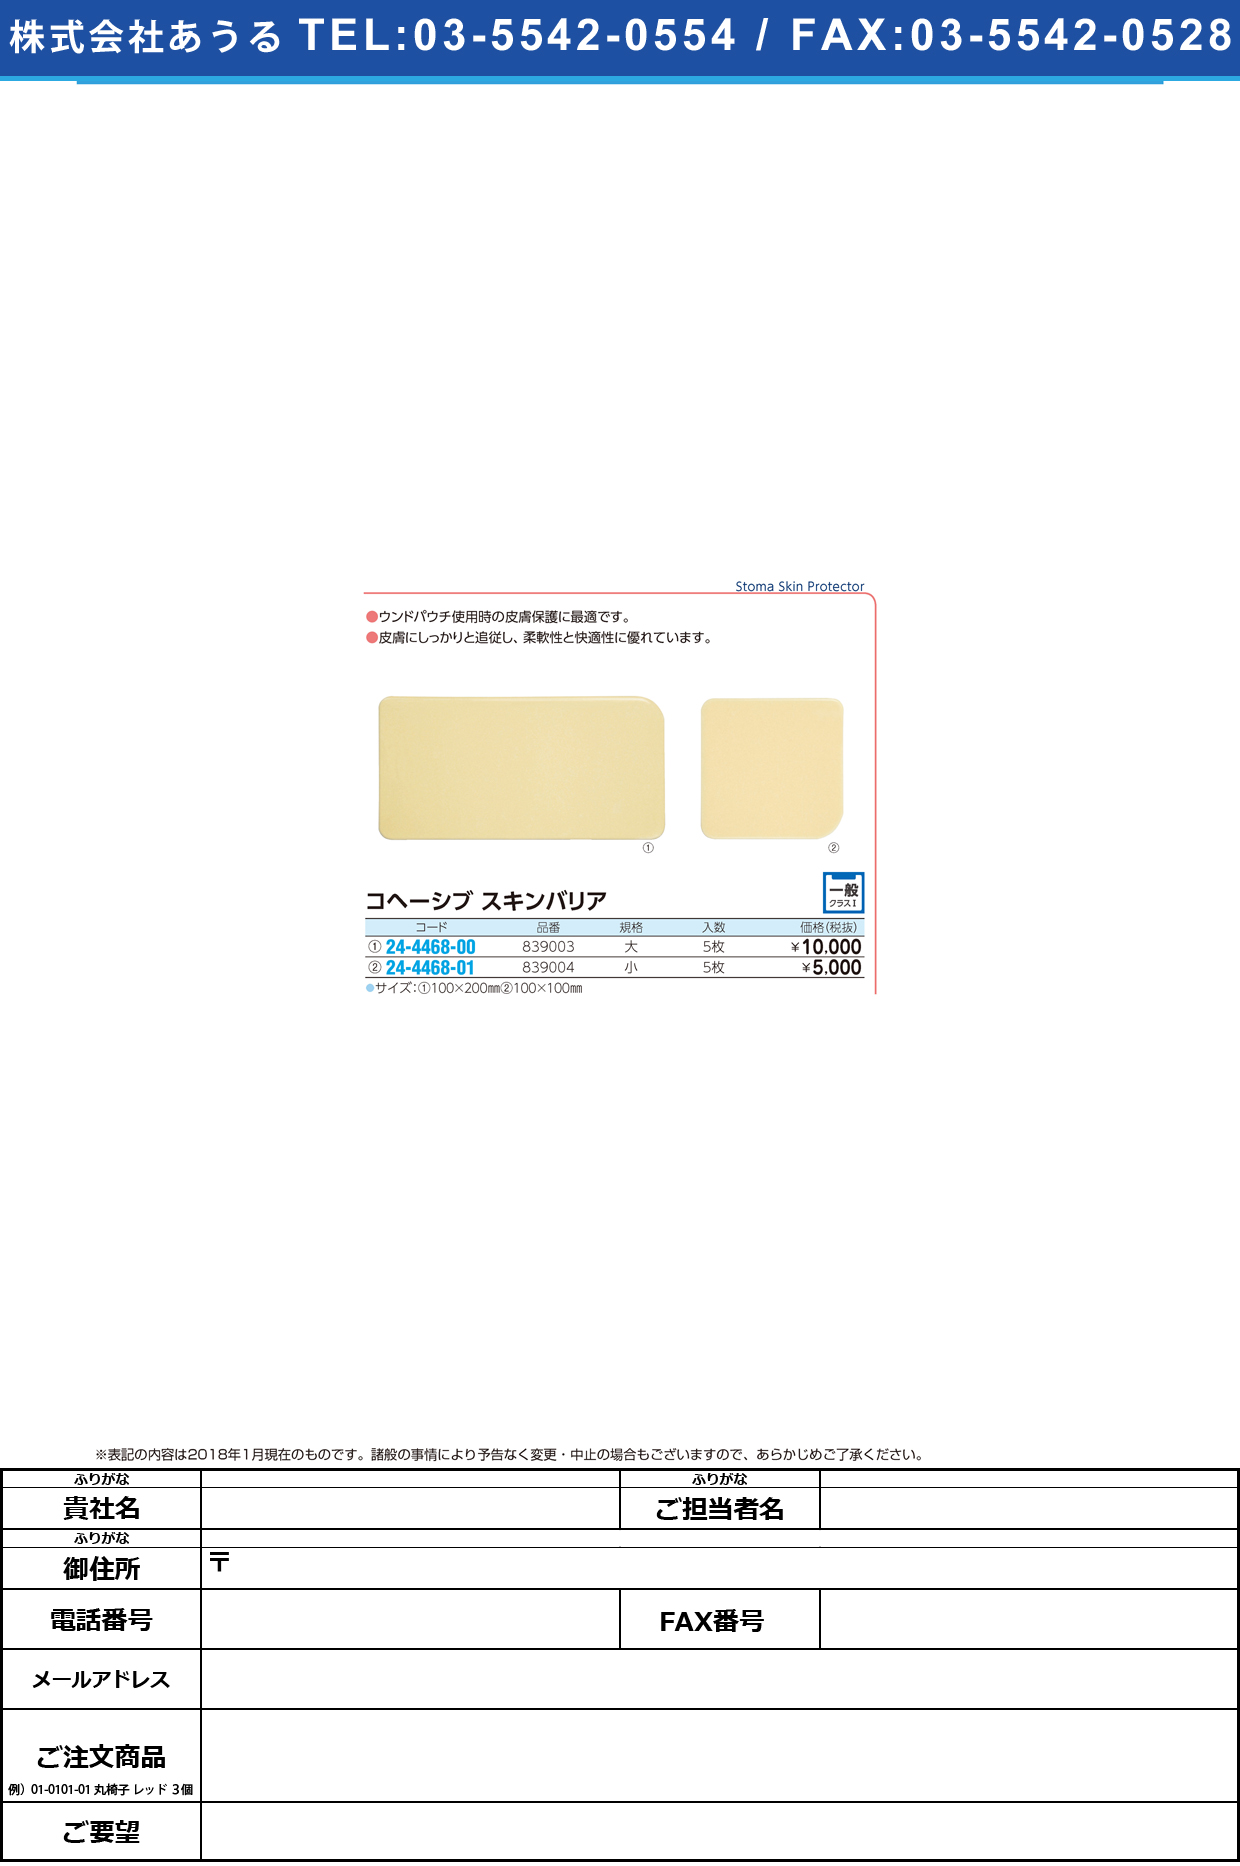 (24-4468-01)コヘーシブスキンバリア 839004(ｼｮｳ)5ﾏｲ ｺﾍｰｼﾌﾞｽｷﾝﾊﾞﾘｱ【1箱単位】【2019年カタログ商品】